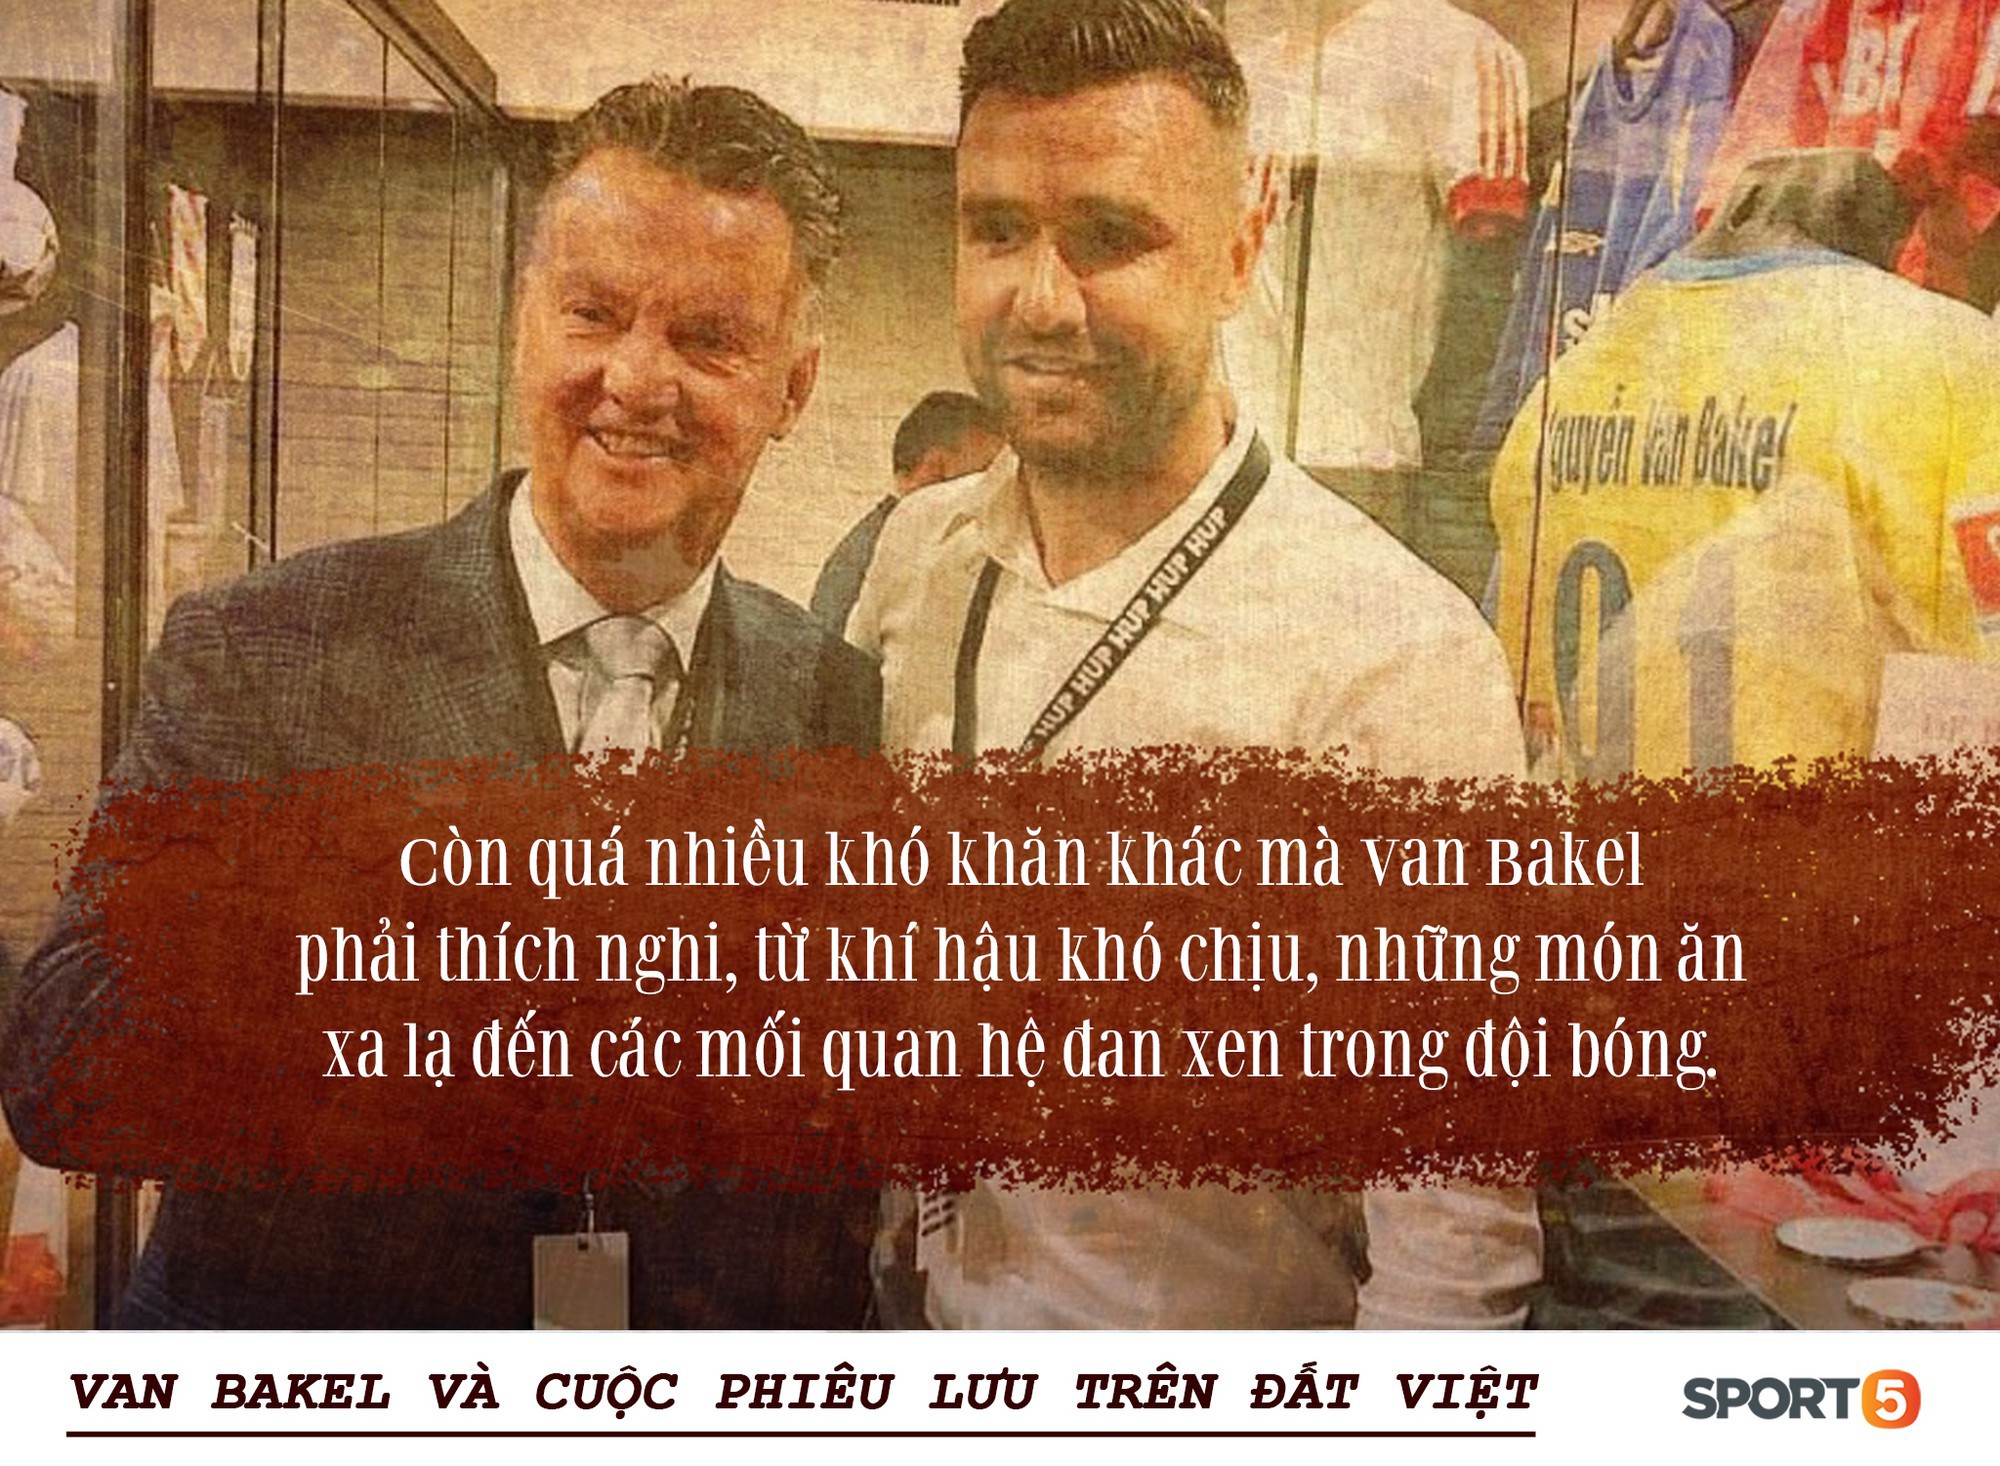 Bóng đá Việt qua mắt cầu thủ ngoại (kỳ 2): “Để tồn tại, tôi phải nói dối đã khoác áo PSV và đánh bại những người uống máu rắn” - Ảnh 2.